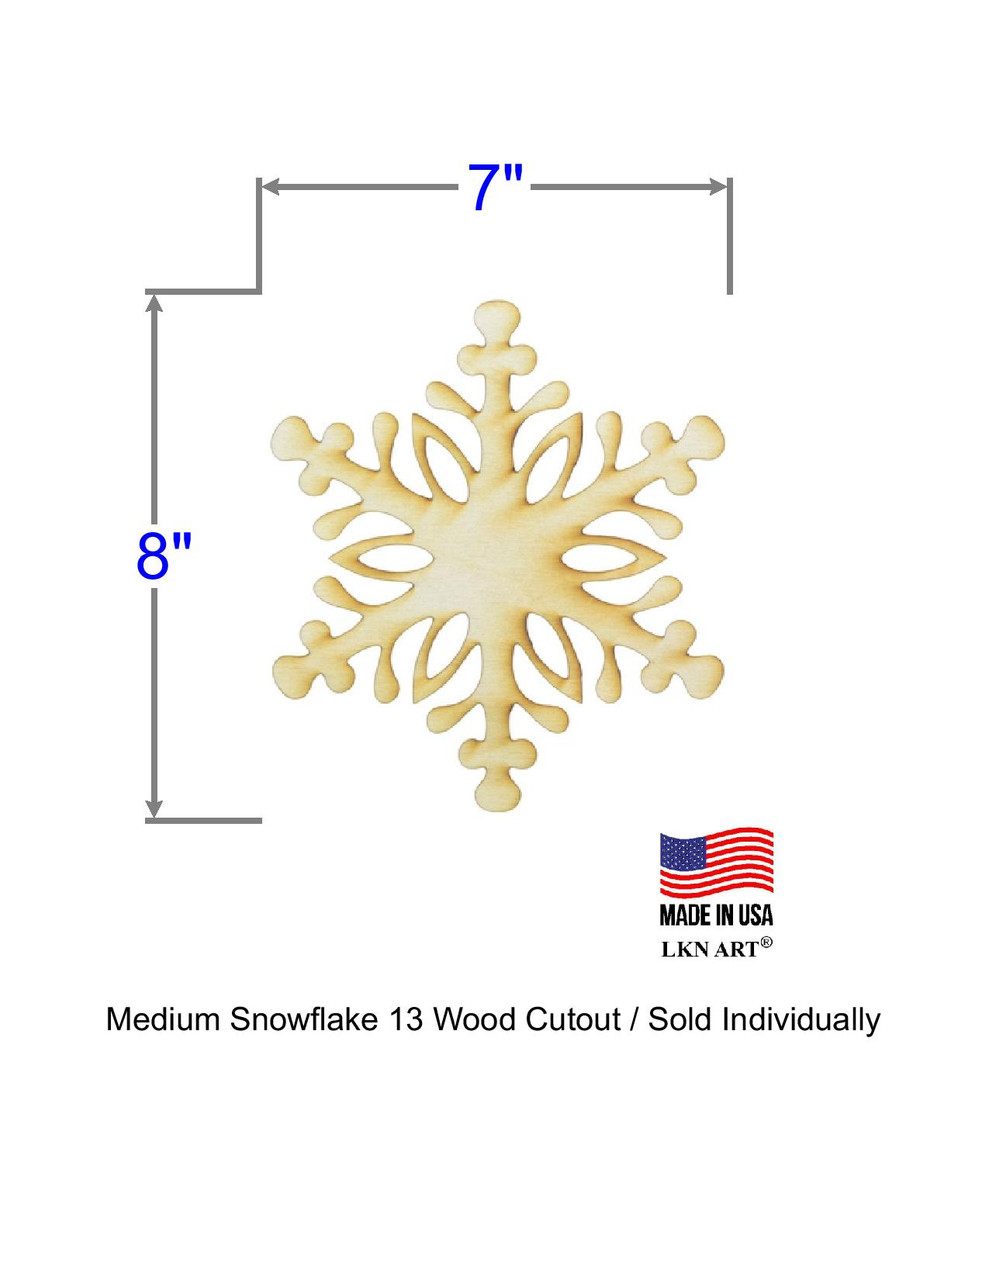 Snowflake #13 Wood Cutout 